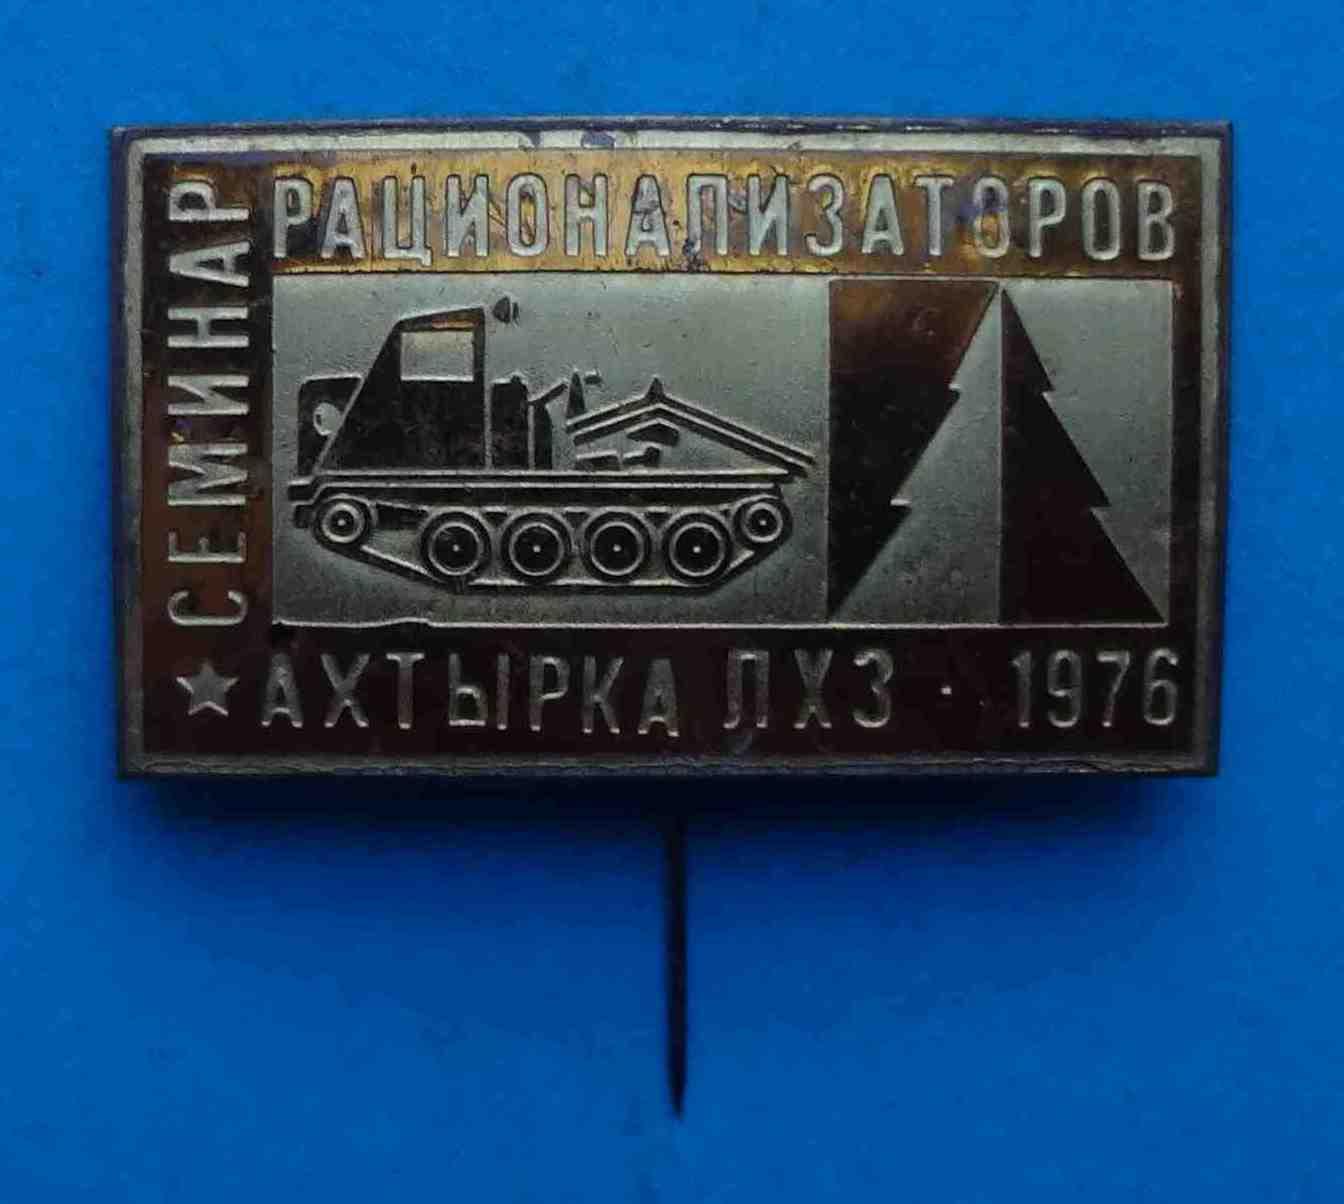 Семинар рационализаторов Ахтырка ПХЗ 1971 Сумская область трактор (5)